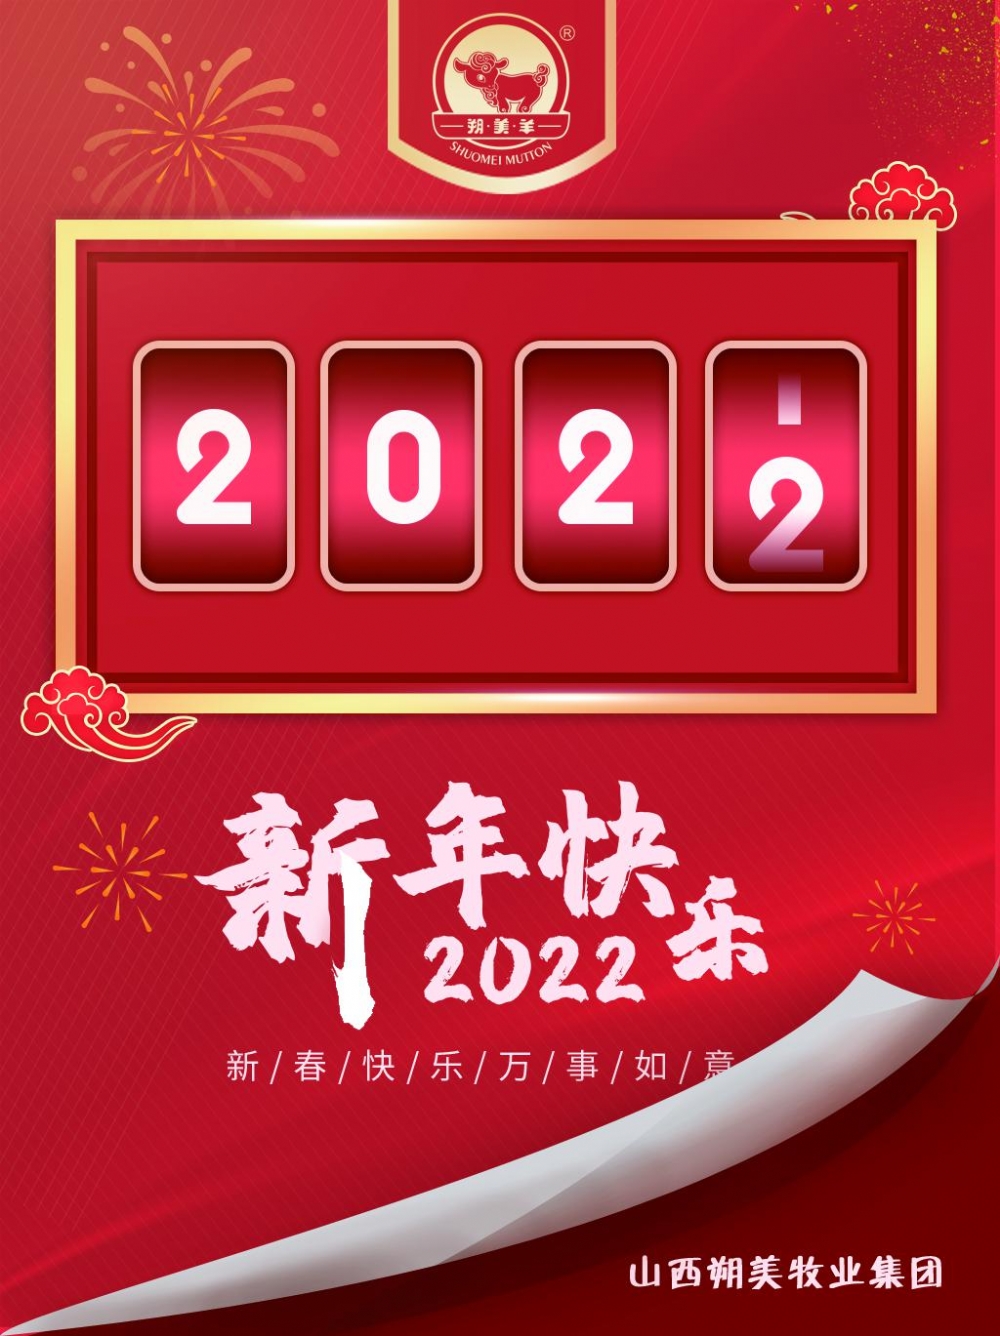 朔美集团祝大家2022年新年快乐！